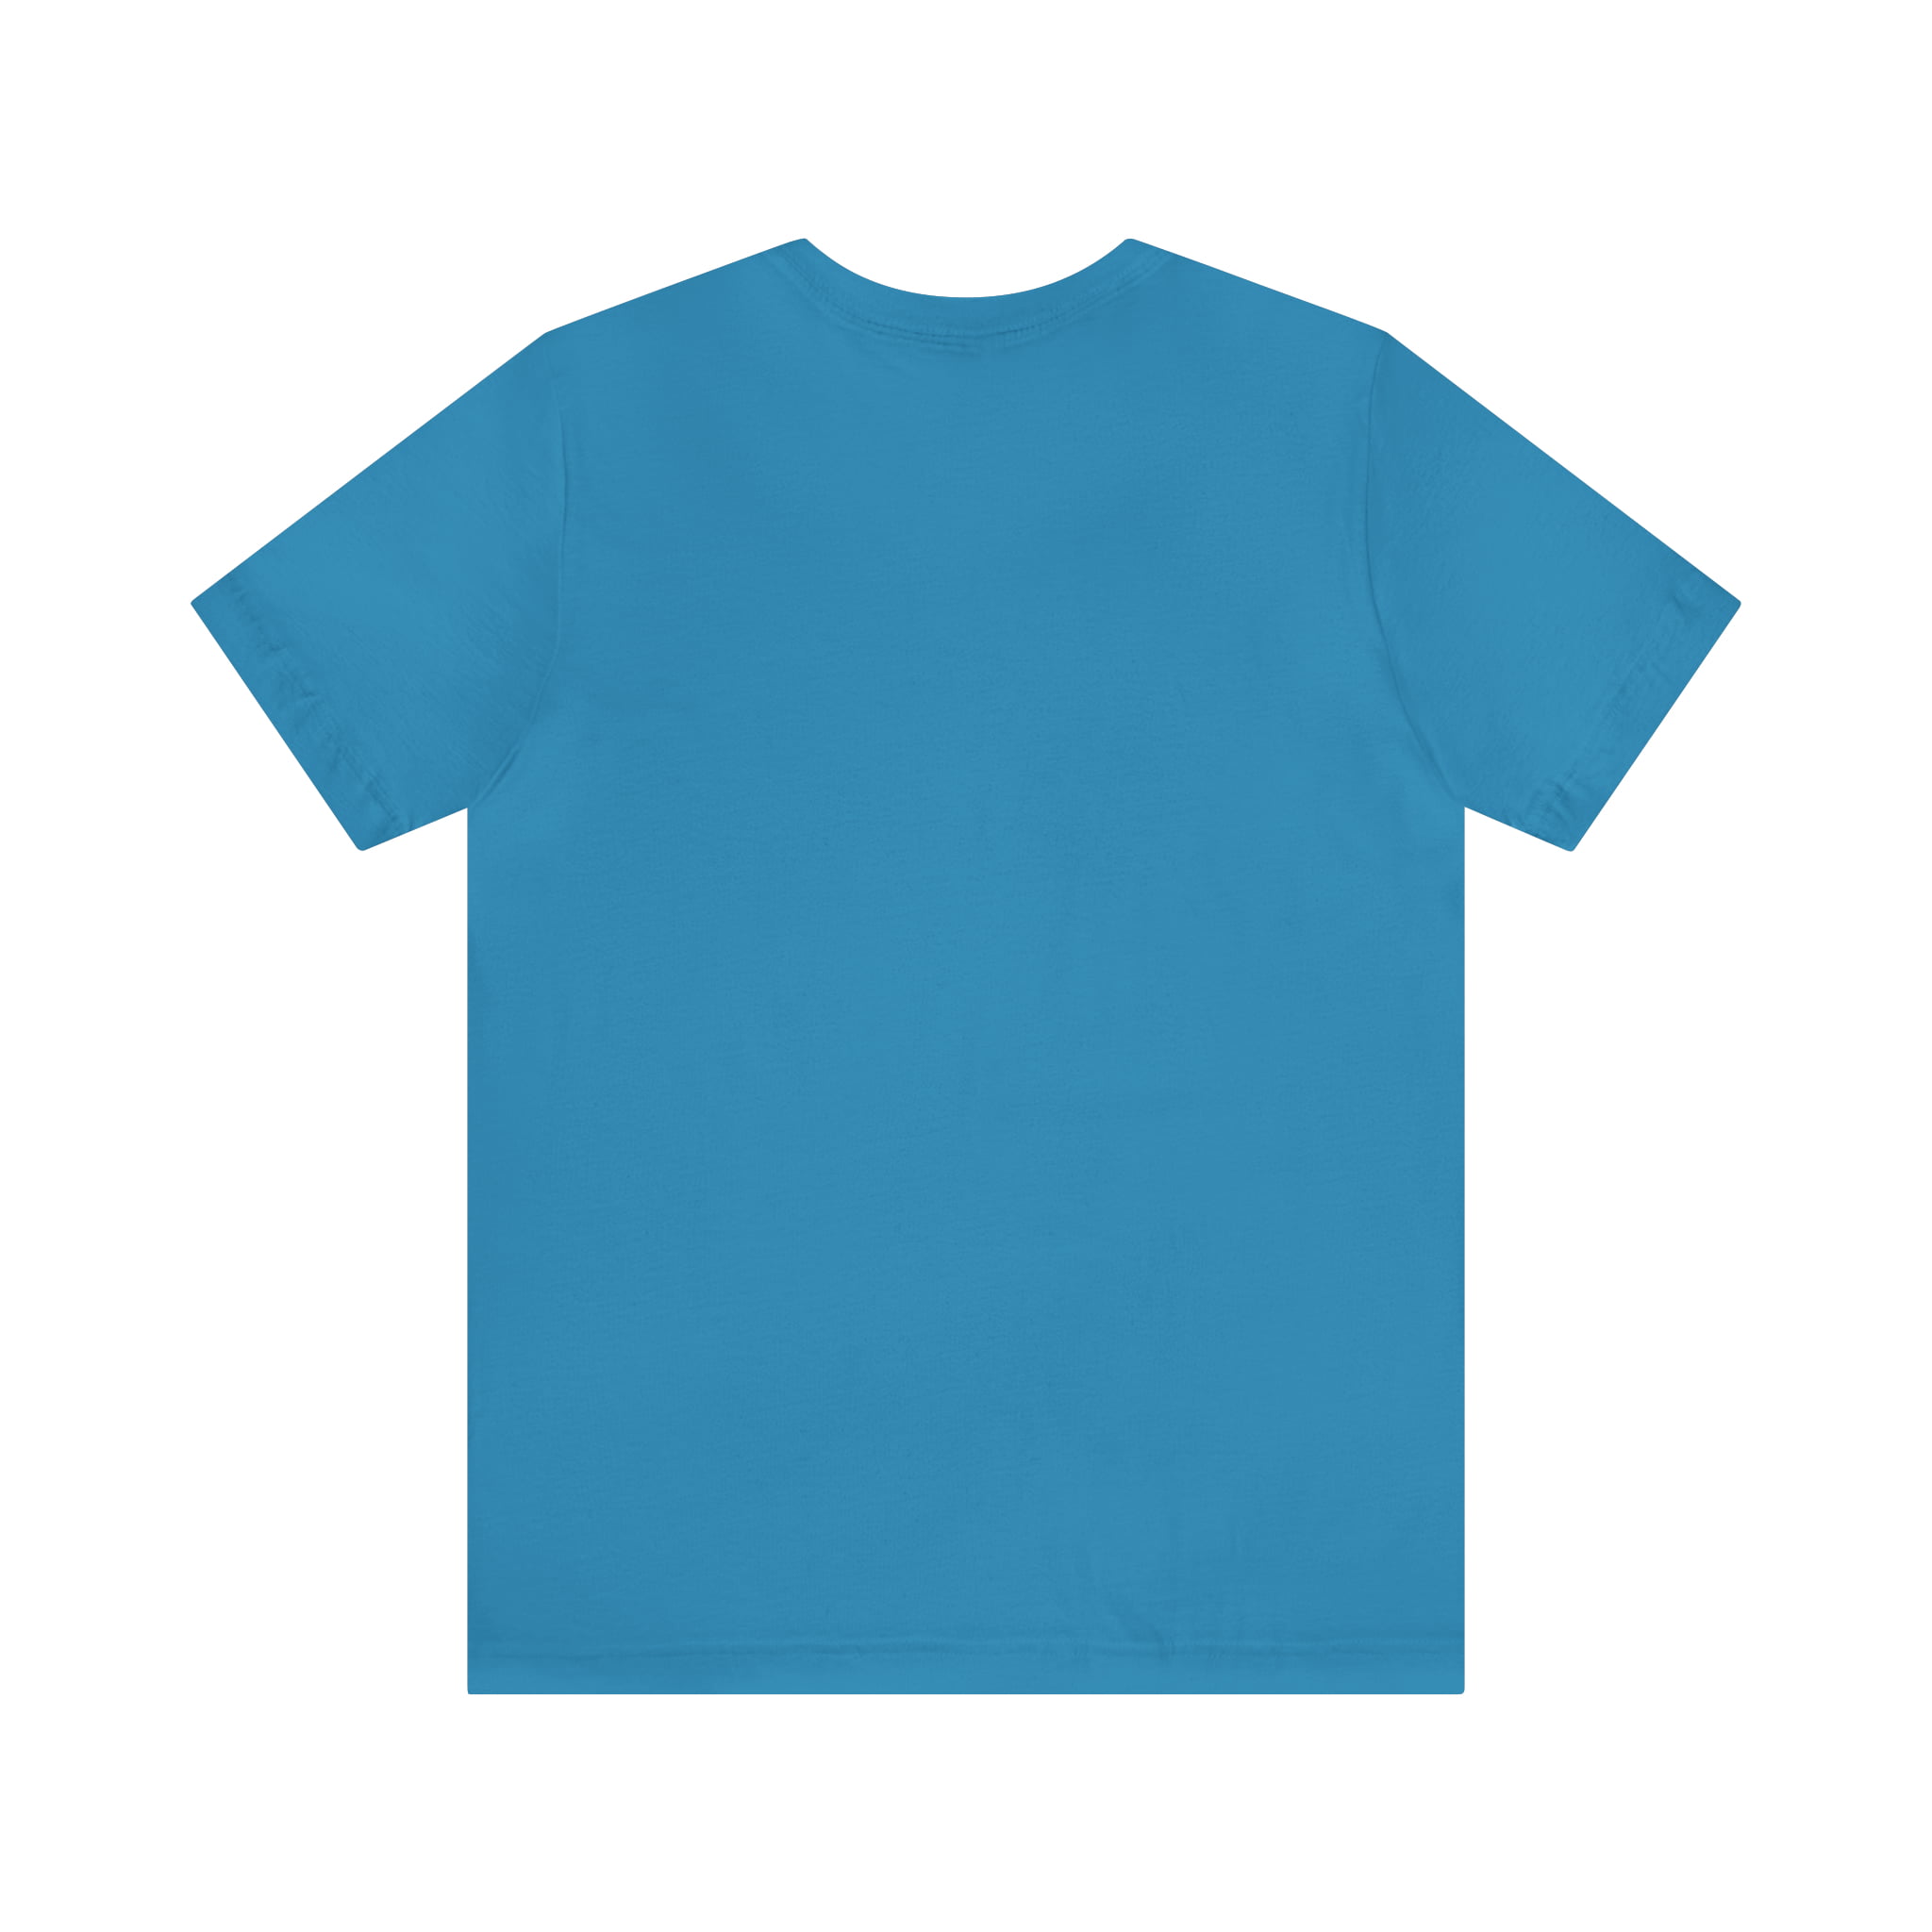 Drip Urban Streetwear Shirt | Drippin Statement T-Shirt